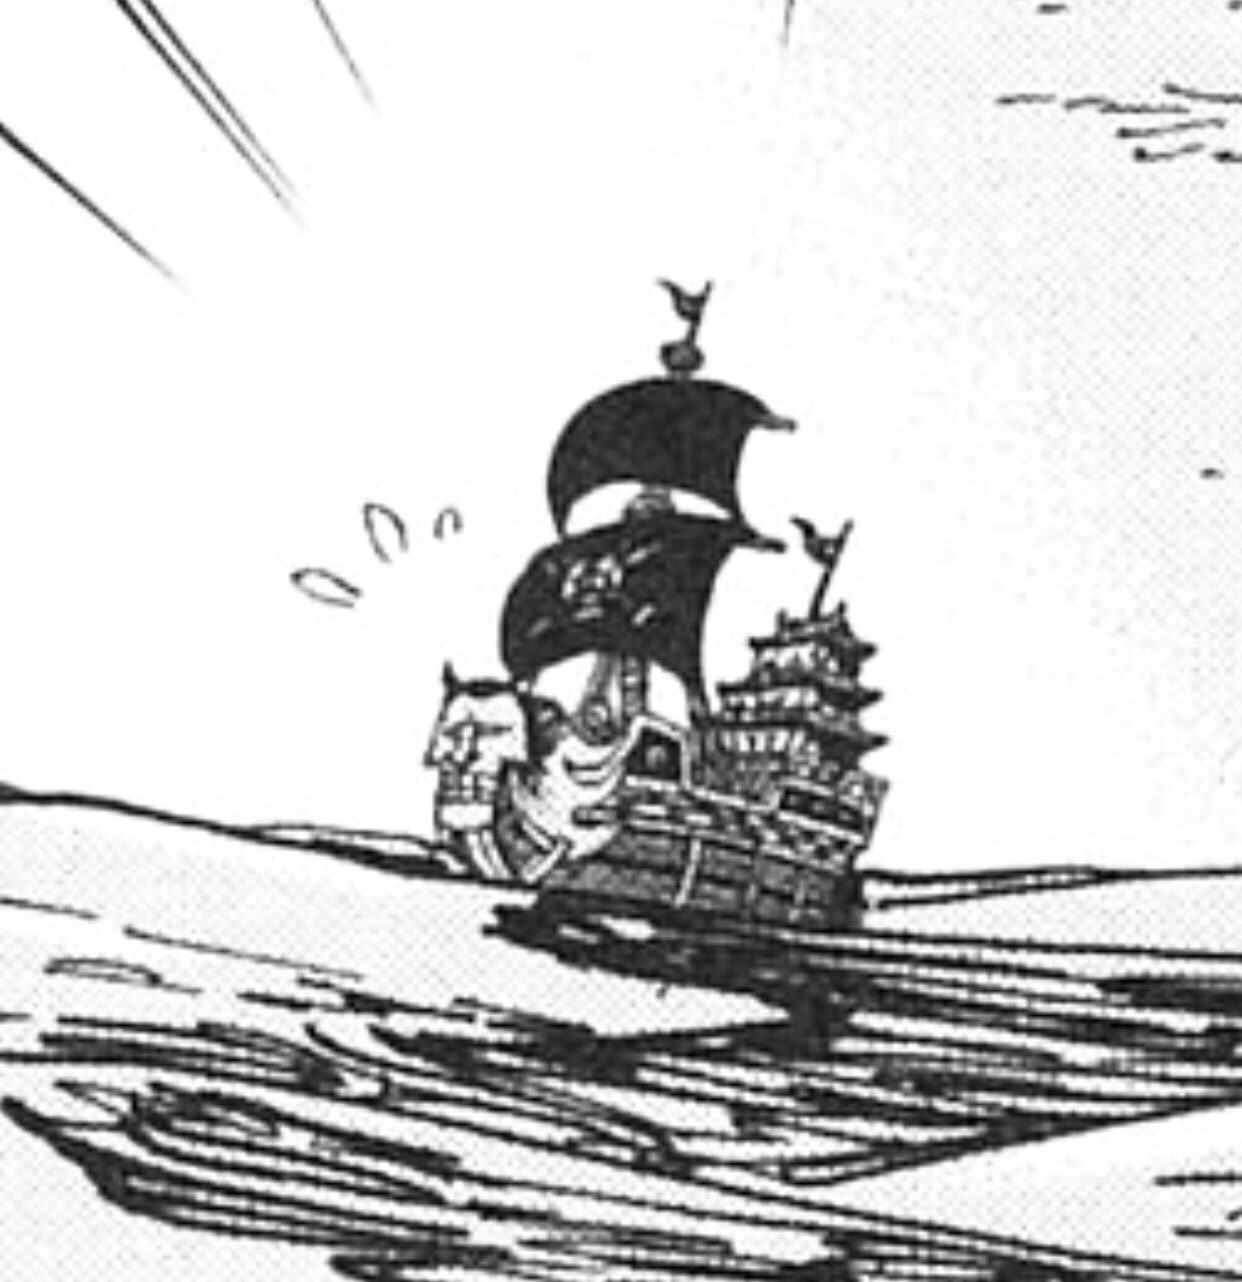 Log ワンピース考察 最悪の世代の海賊団で船の名前が判明してるのは 麦わら ハート ファイアタンクくらいだよね ウルージさんトコの破戒僧海賊団の船も結構インパクトあって好きなんだけど 笑 バルトロメオの船に匹敵する衝撃w ワンピース まとめ